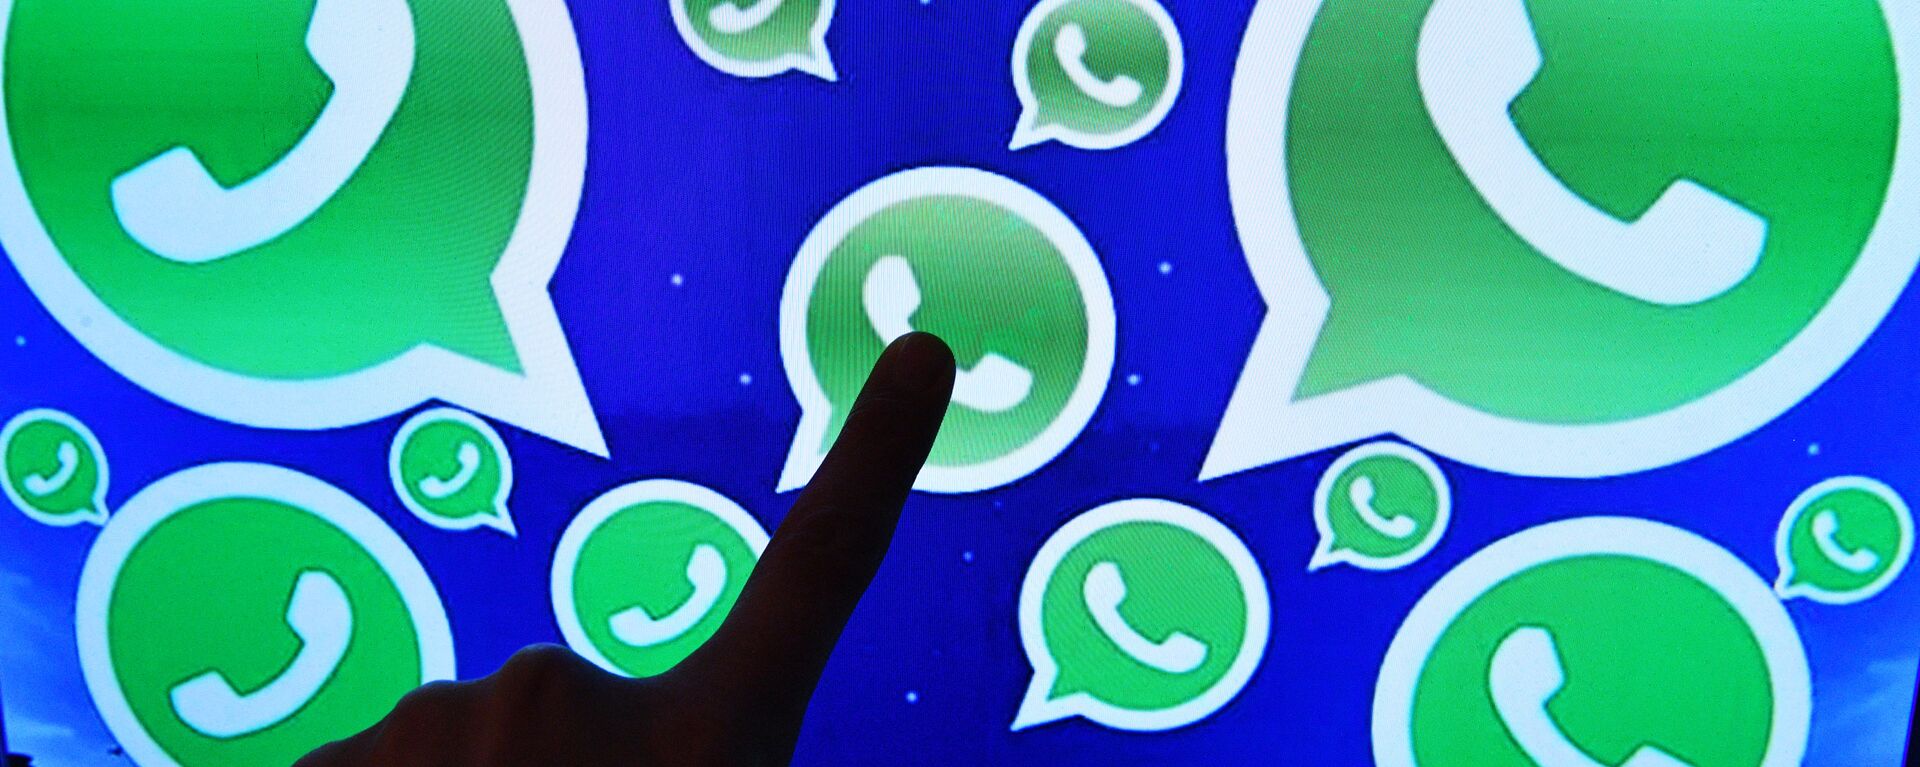 Una persona toca una pantalla en la que se ven diversos logotipos de la aplicación WhatsApp - Sputnik Mundo, 1920, 08.10.2021